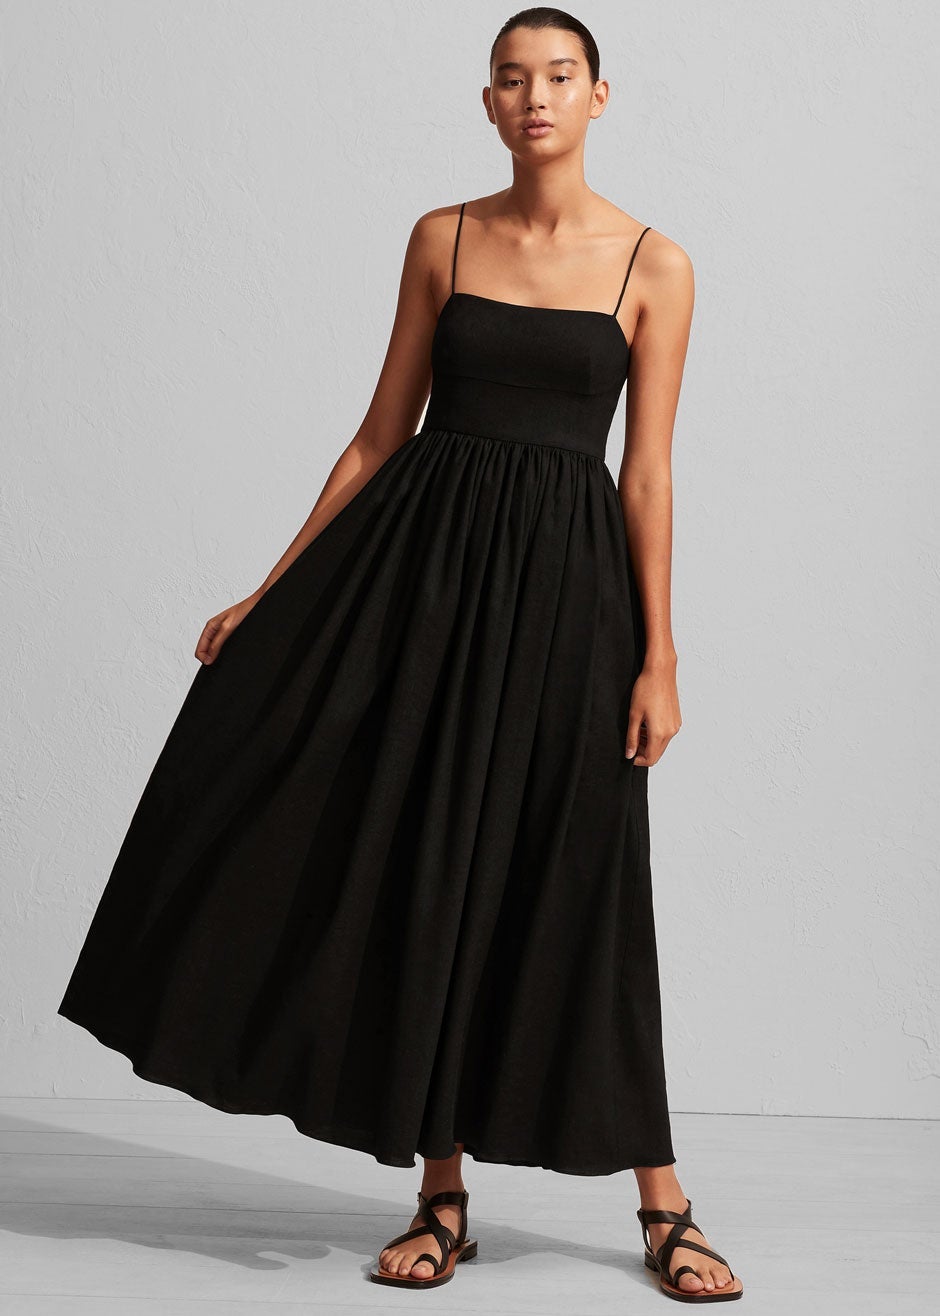 Matteau Linen Cami Dress - Black - 5